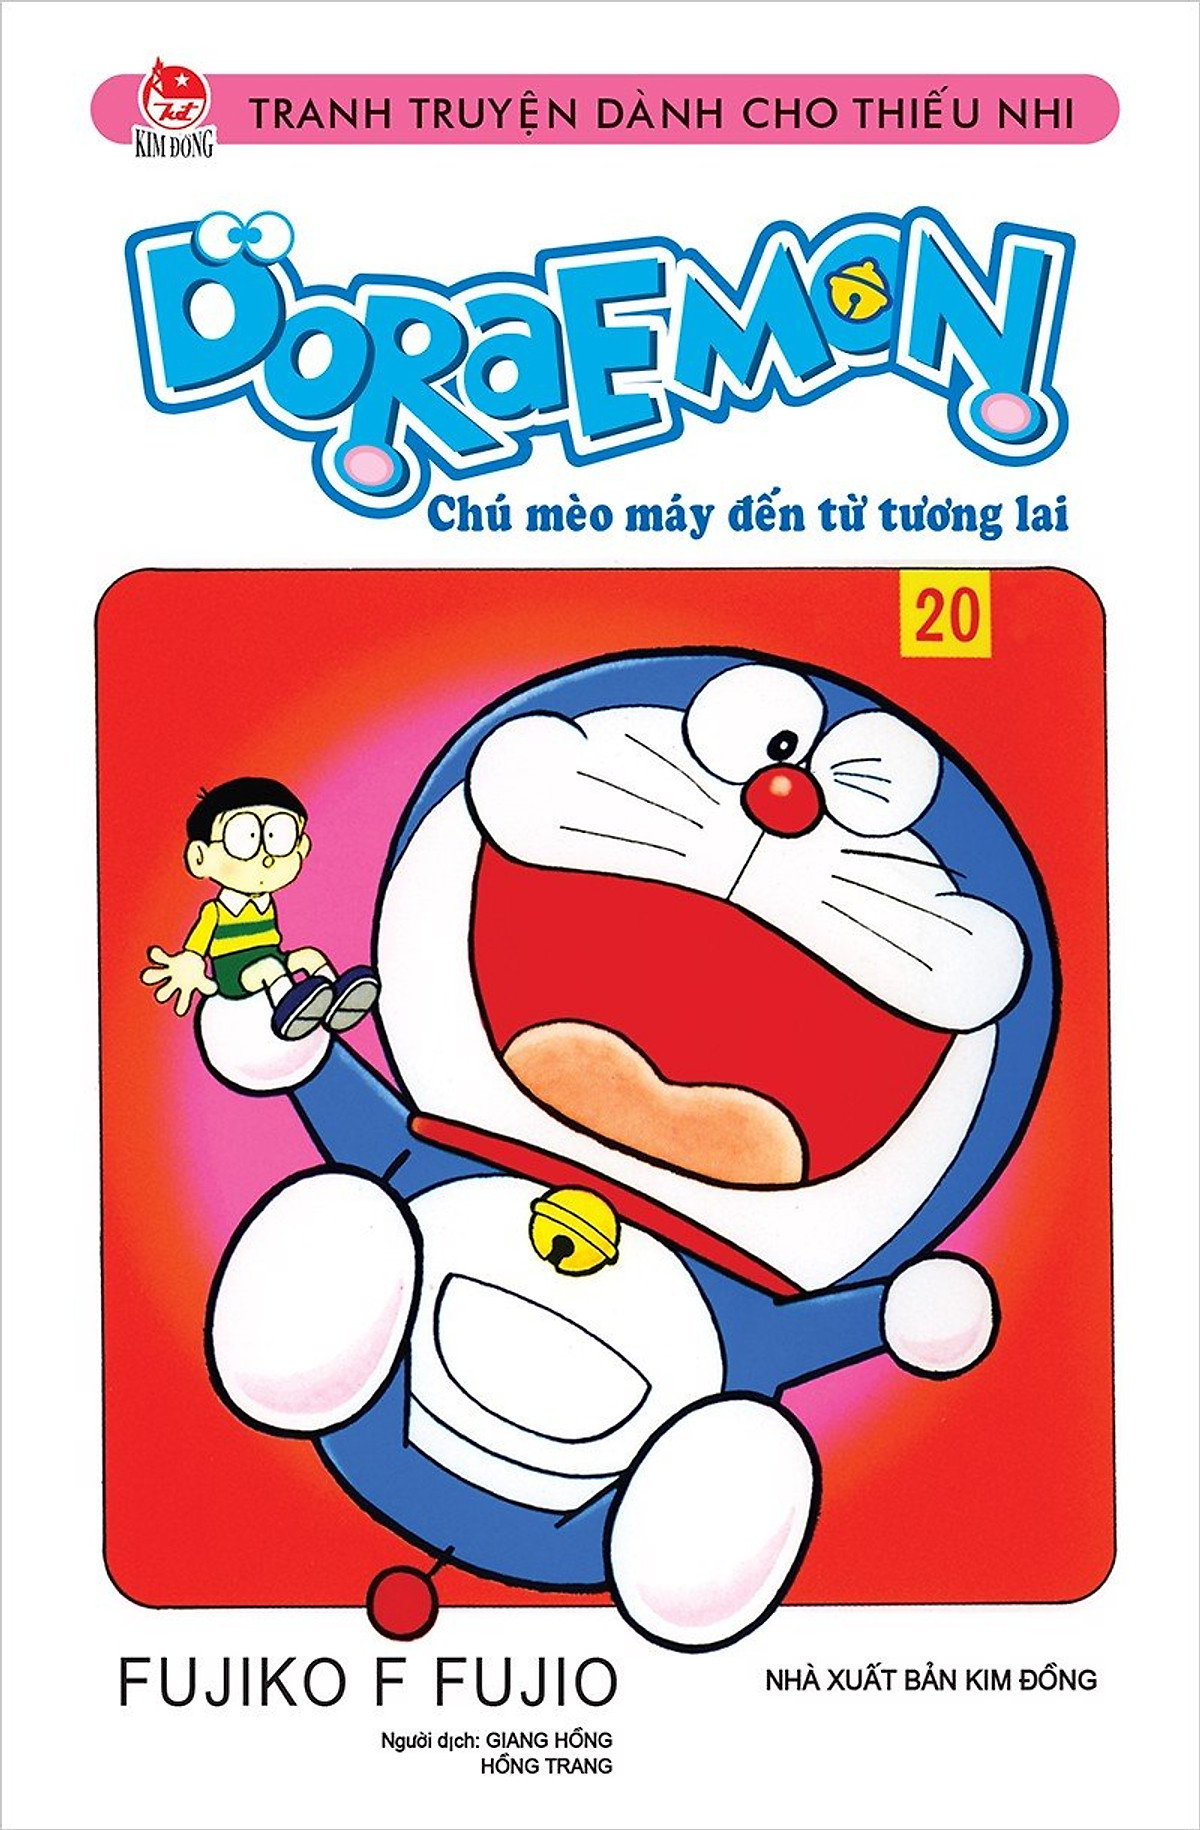 Những câu chuyện ngắn về Doraemon sẽ mang đến cho bạn những giây phút giải trí đầy thú vị và cảm động. Bạn sẽ được đắm chìm vào thế giới của những chú mèo máy thông minh và tốt bụng, cùng những tình huống hài hước và kịch tính.